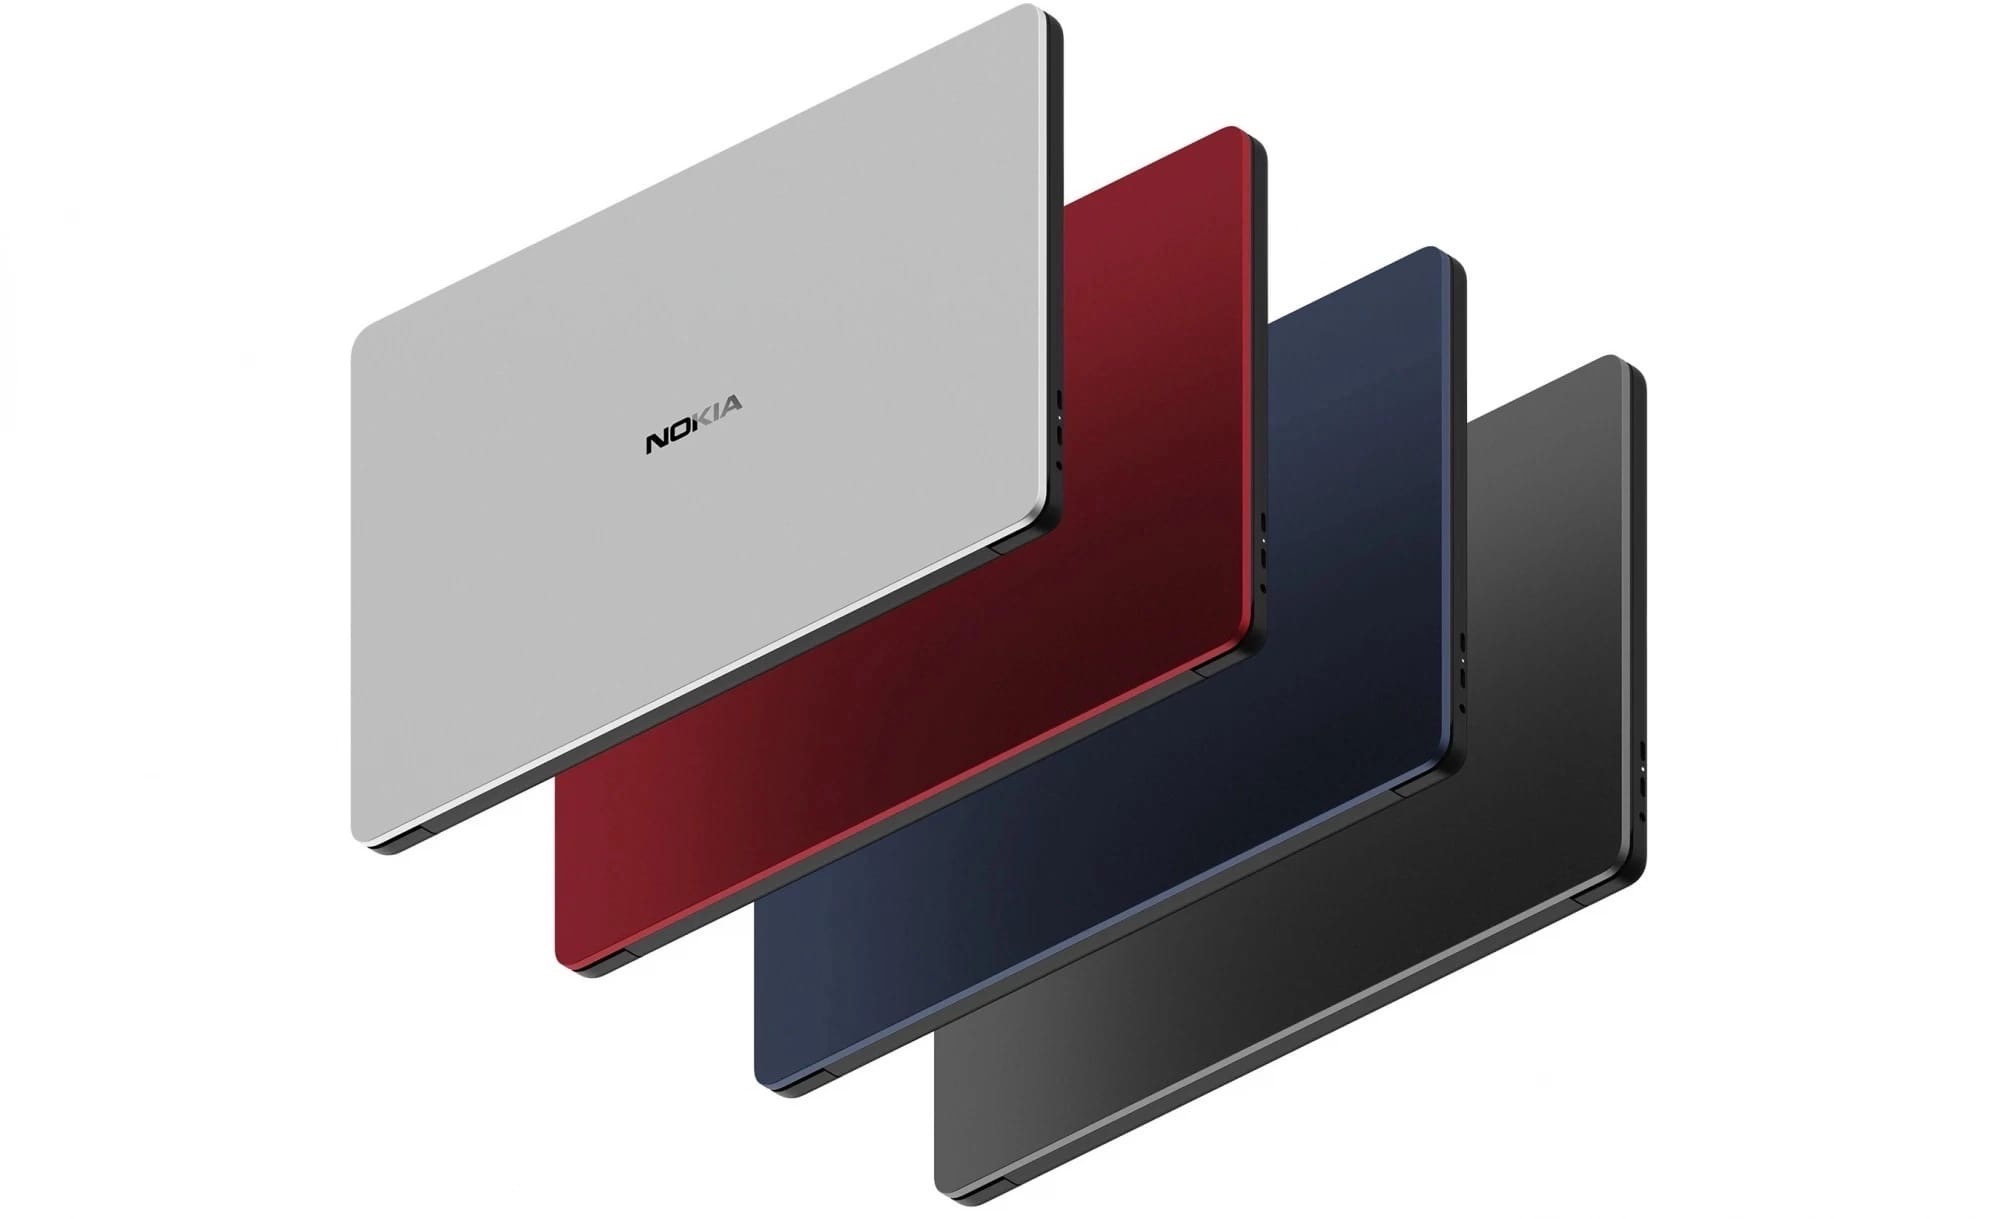 Nokia представила серию ноутбуков PureBook Pro. 